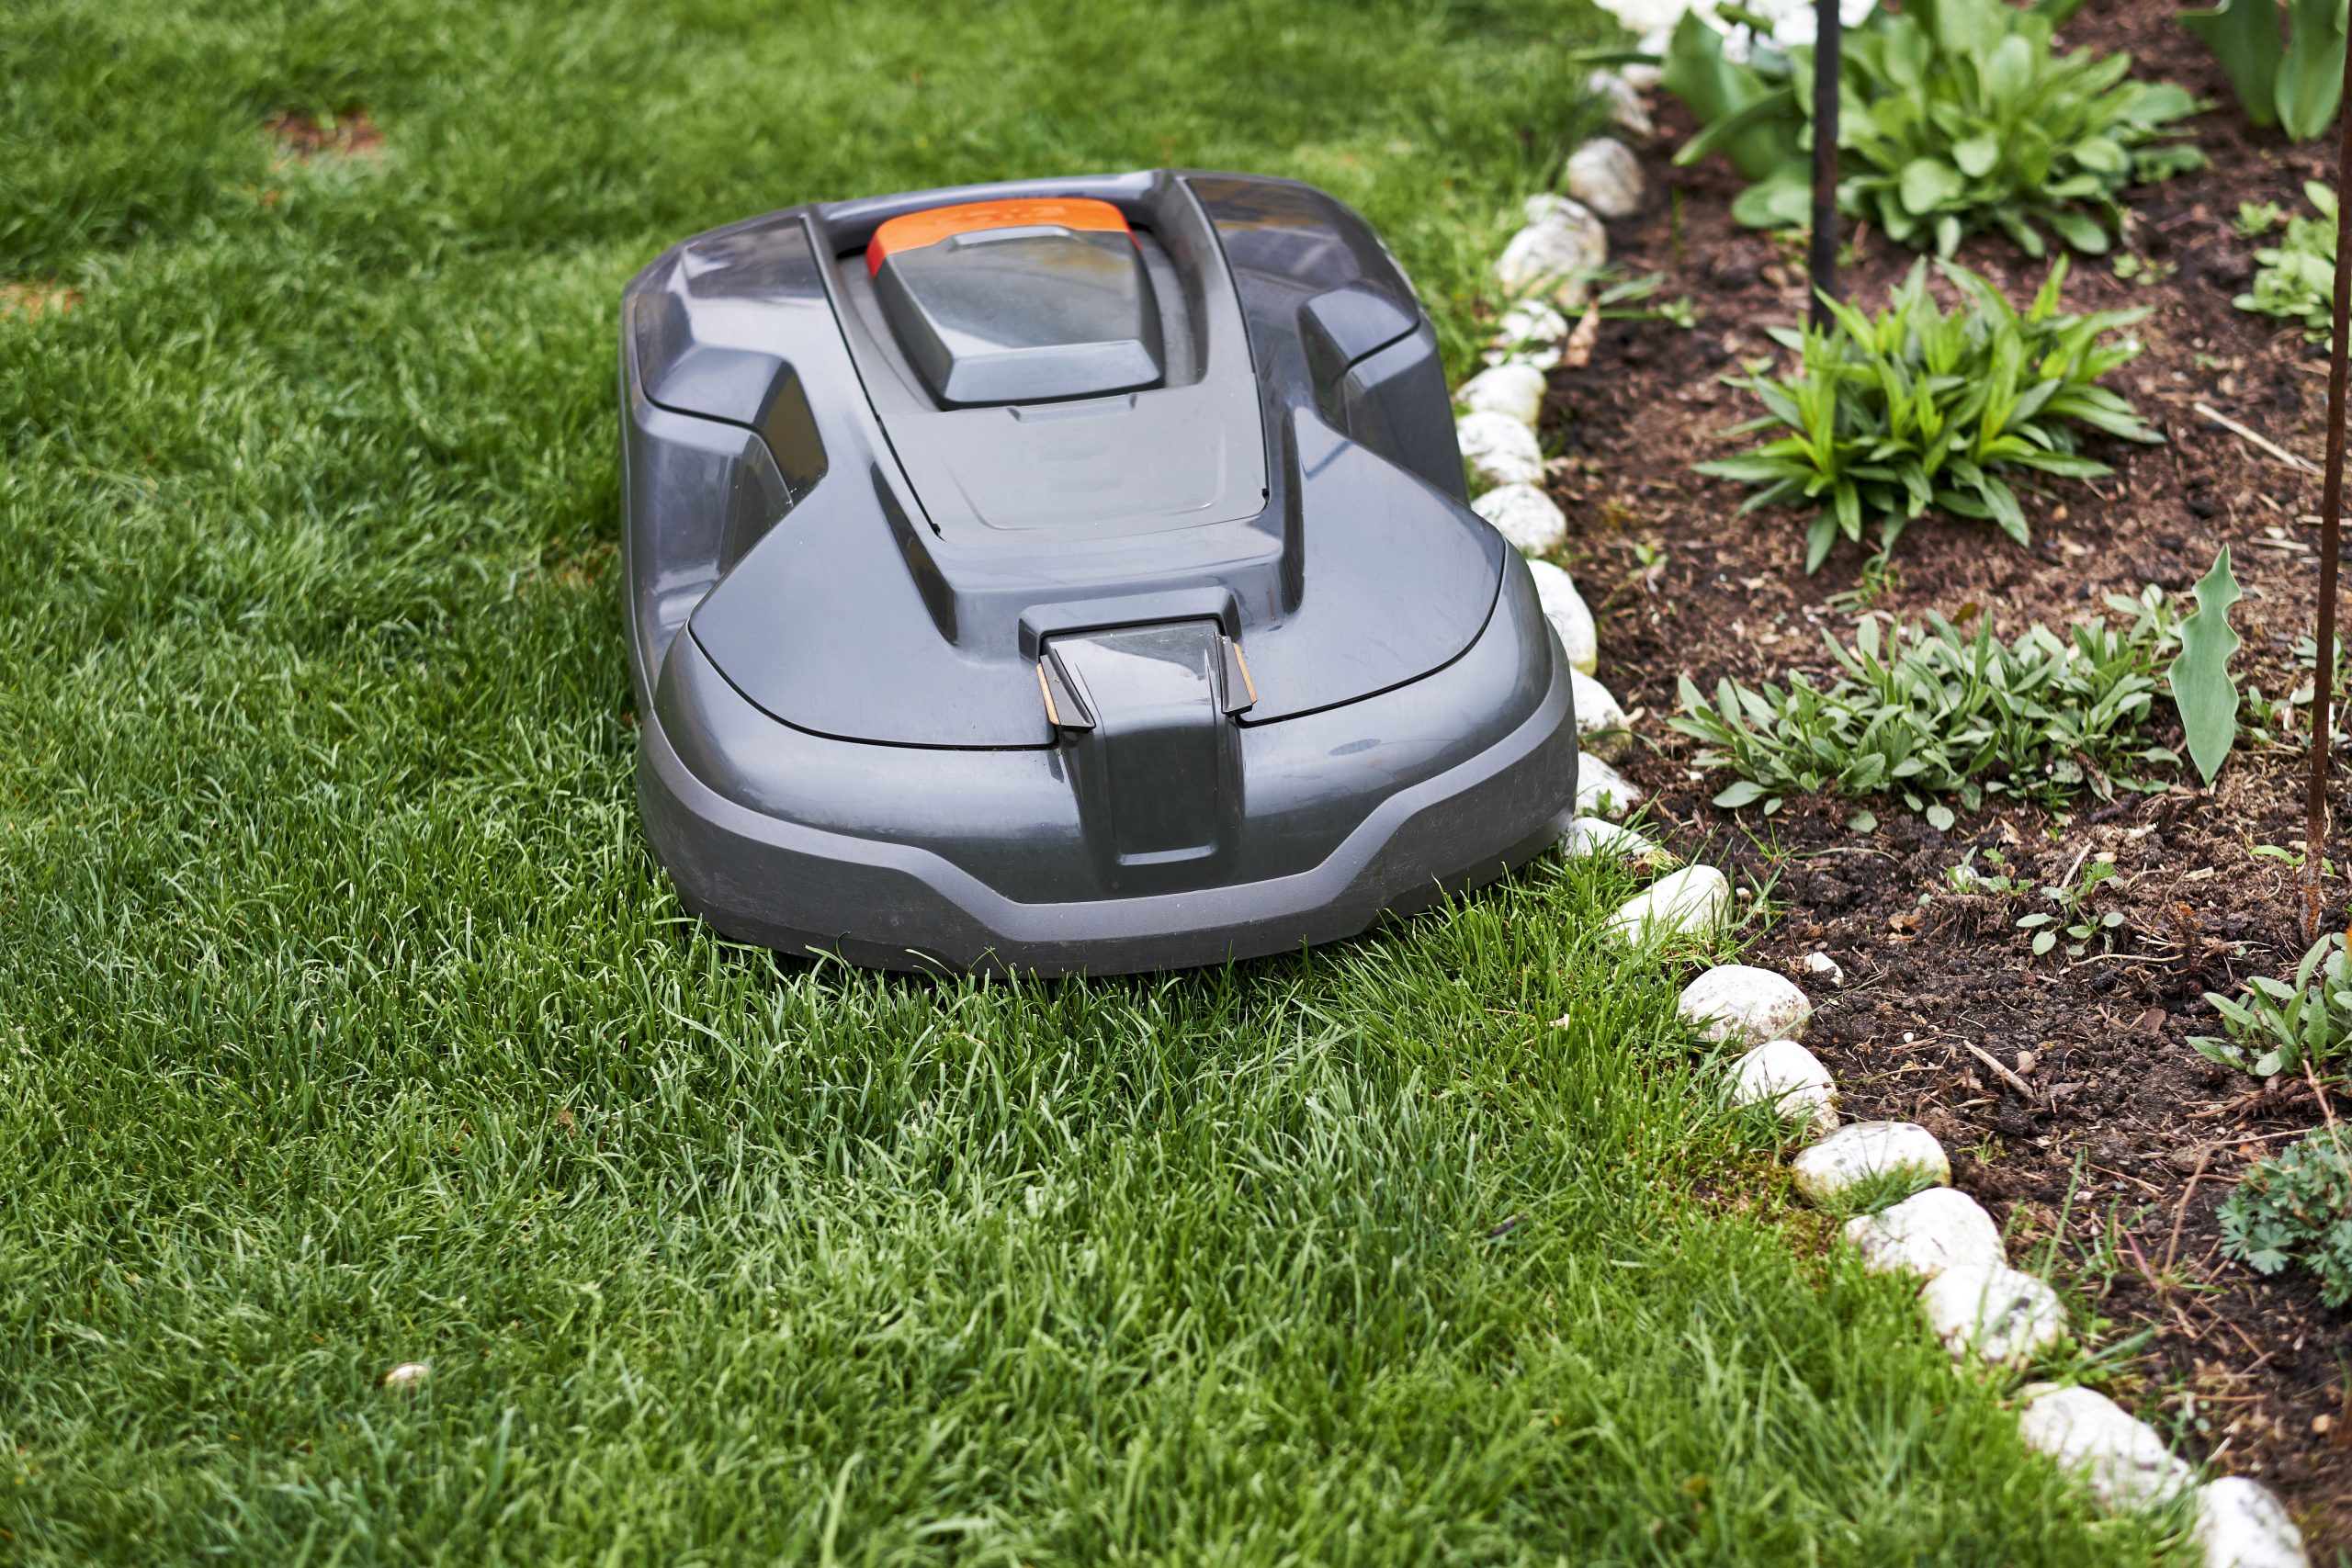 The lawn mower 5.0 ultra. Робот для газона. Робот газонокосилка кабель. Робот газонокосилка видео. Ландшафтный дизайн роботы газонокосилки.